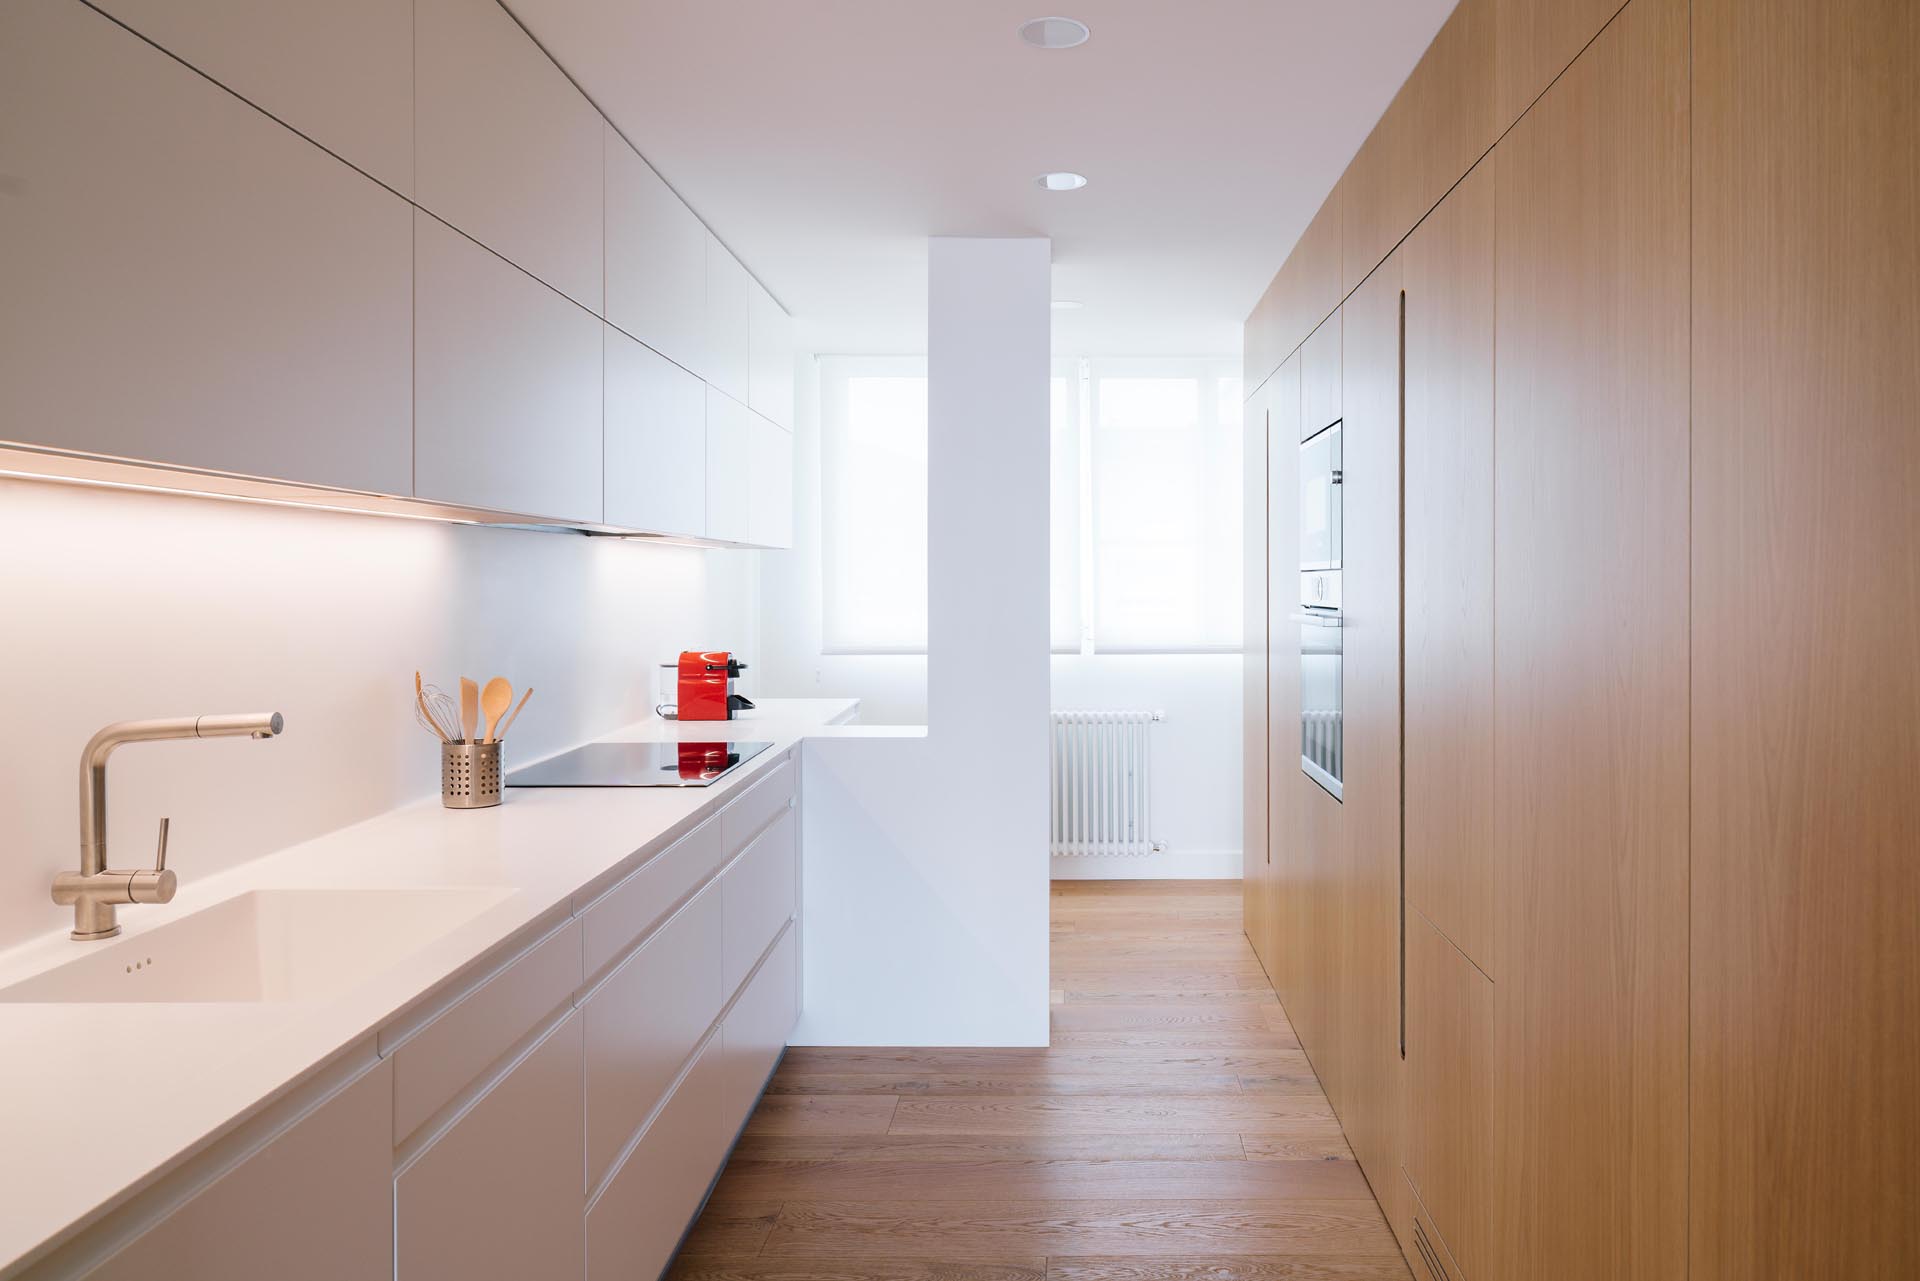 Современная кухня с минималистскими белыми и деревянными шкафами.